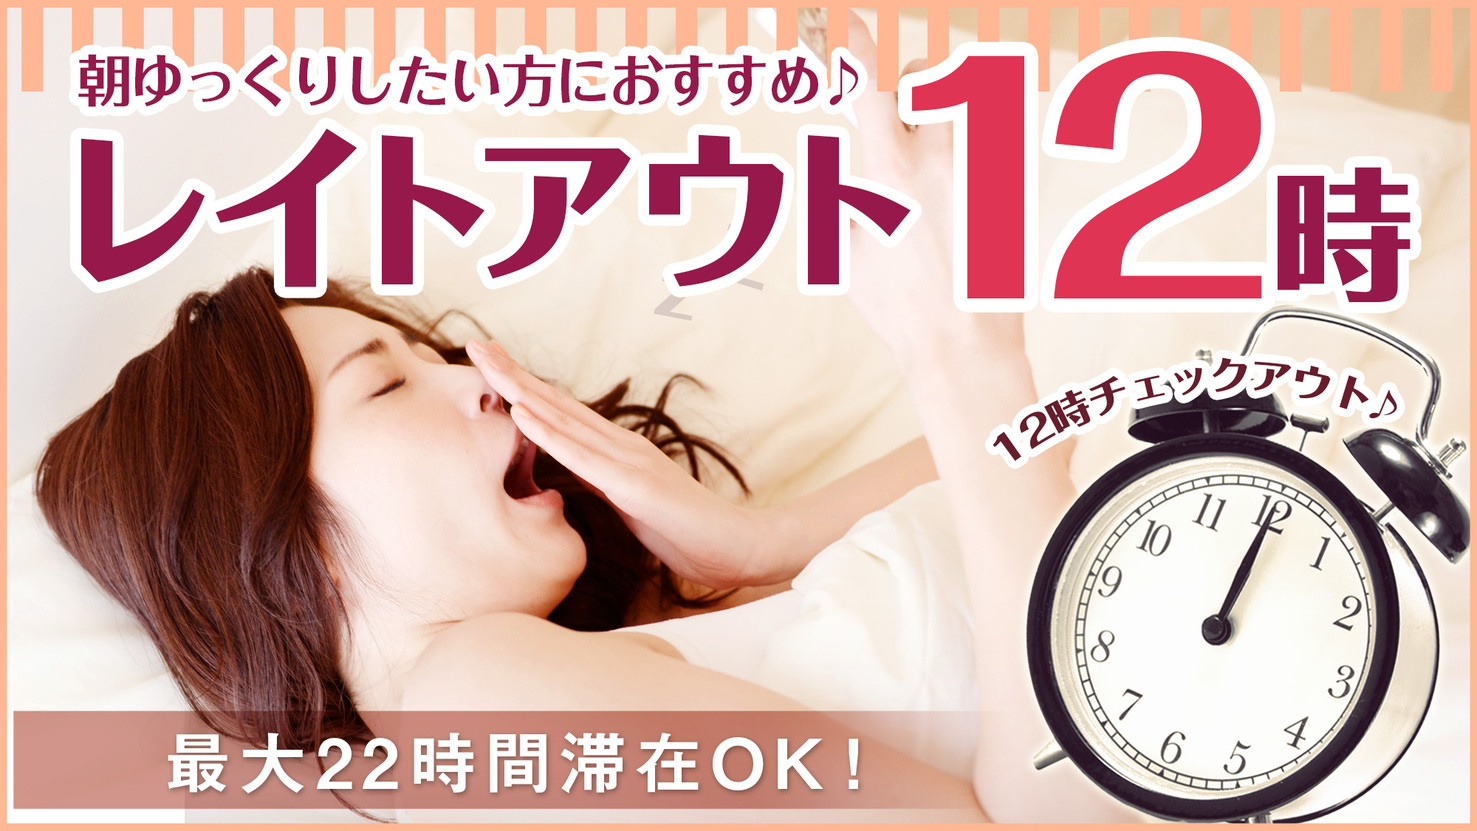 Hotel Abest Shin Anjo Ekimae Okazaki 22 Updated Prices Deals